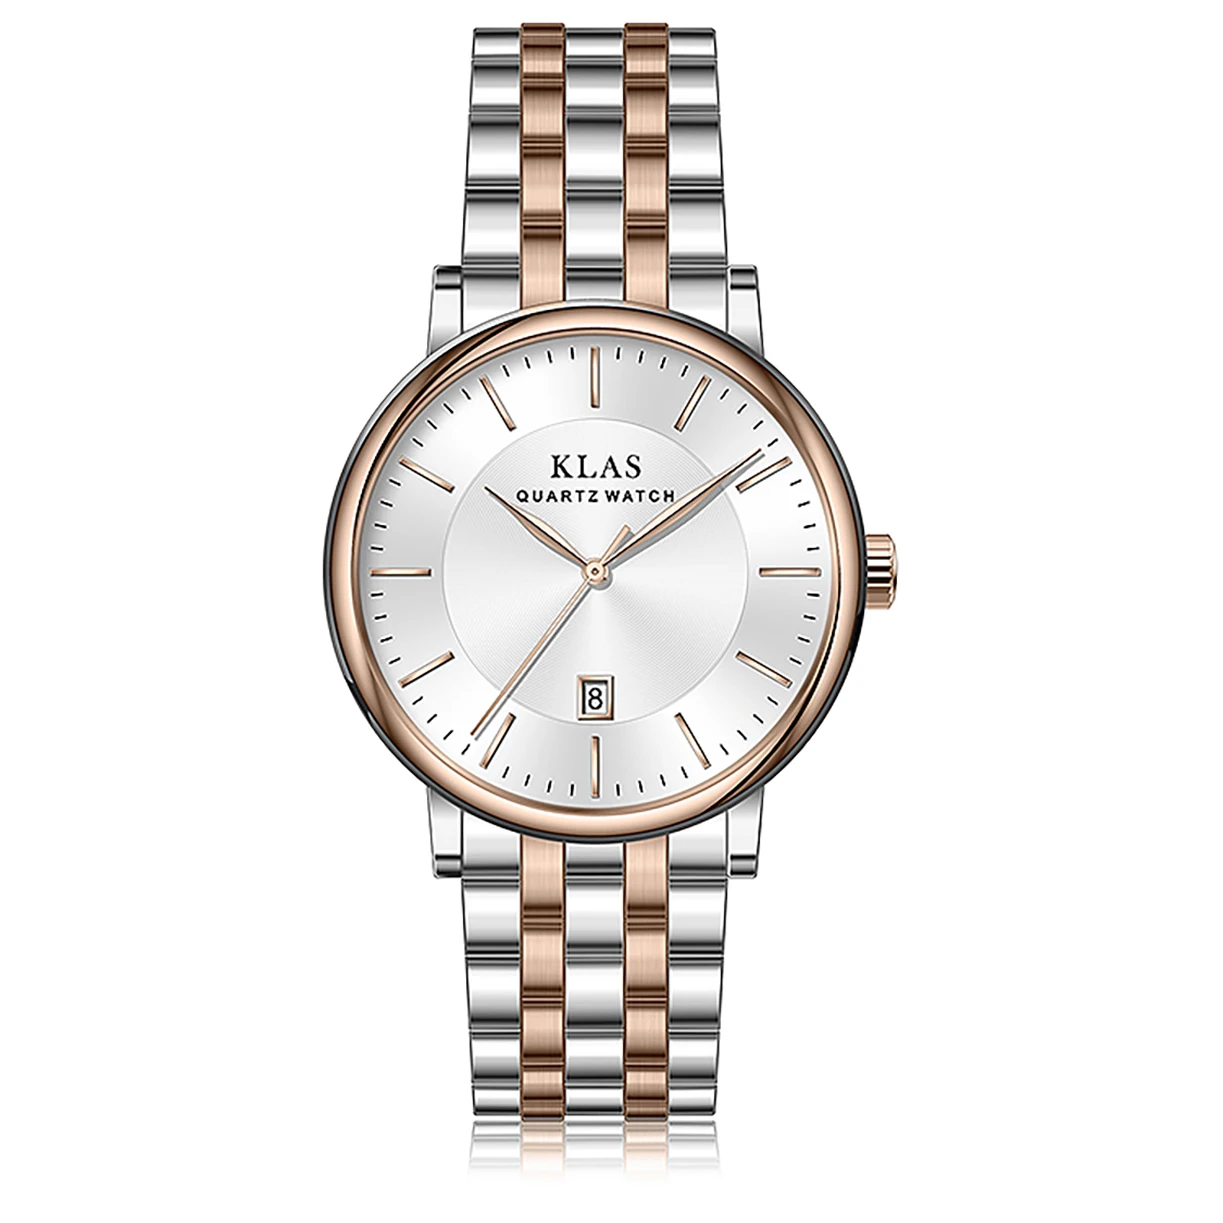 Stainless steel quartz men's watch fashion trend college style KLAS brand